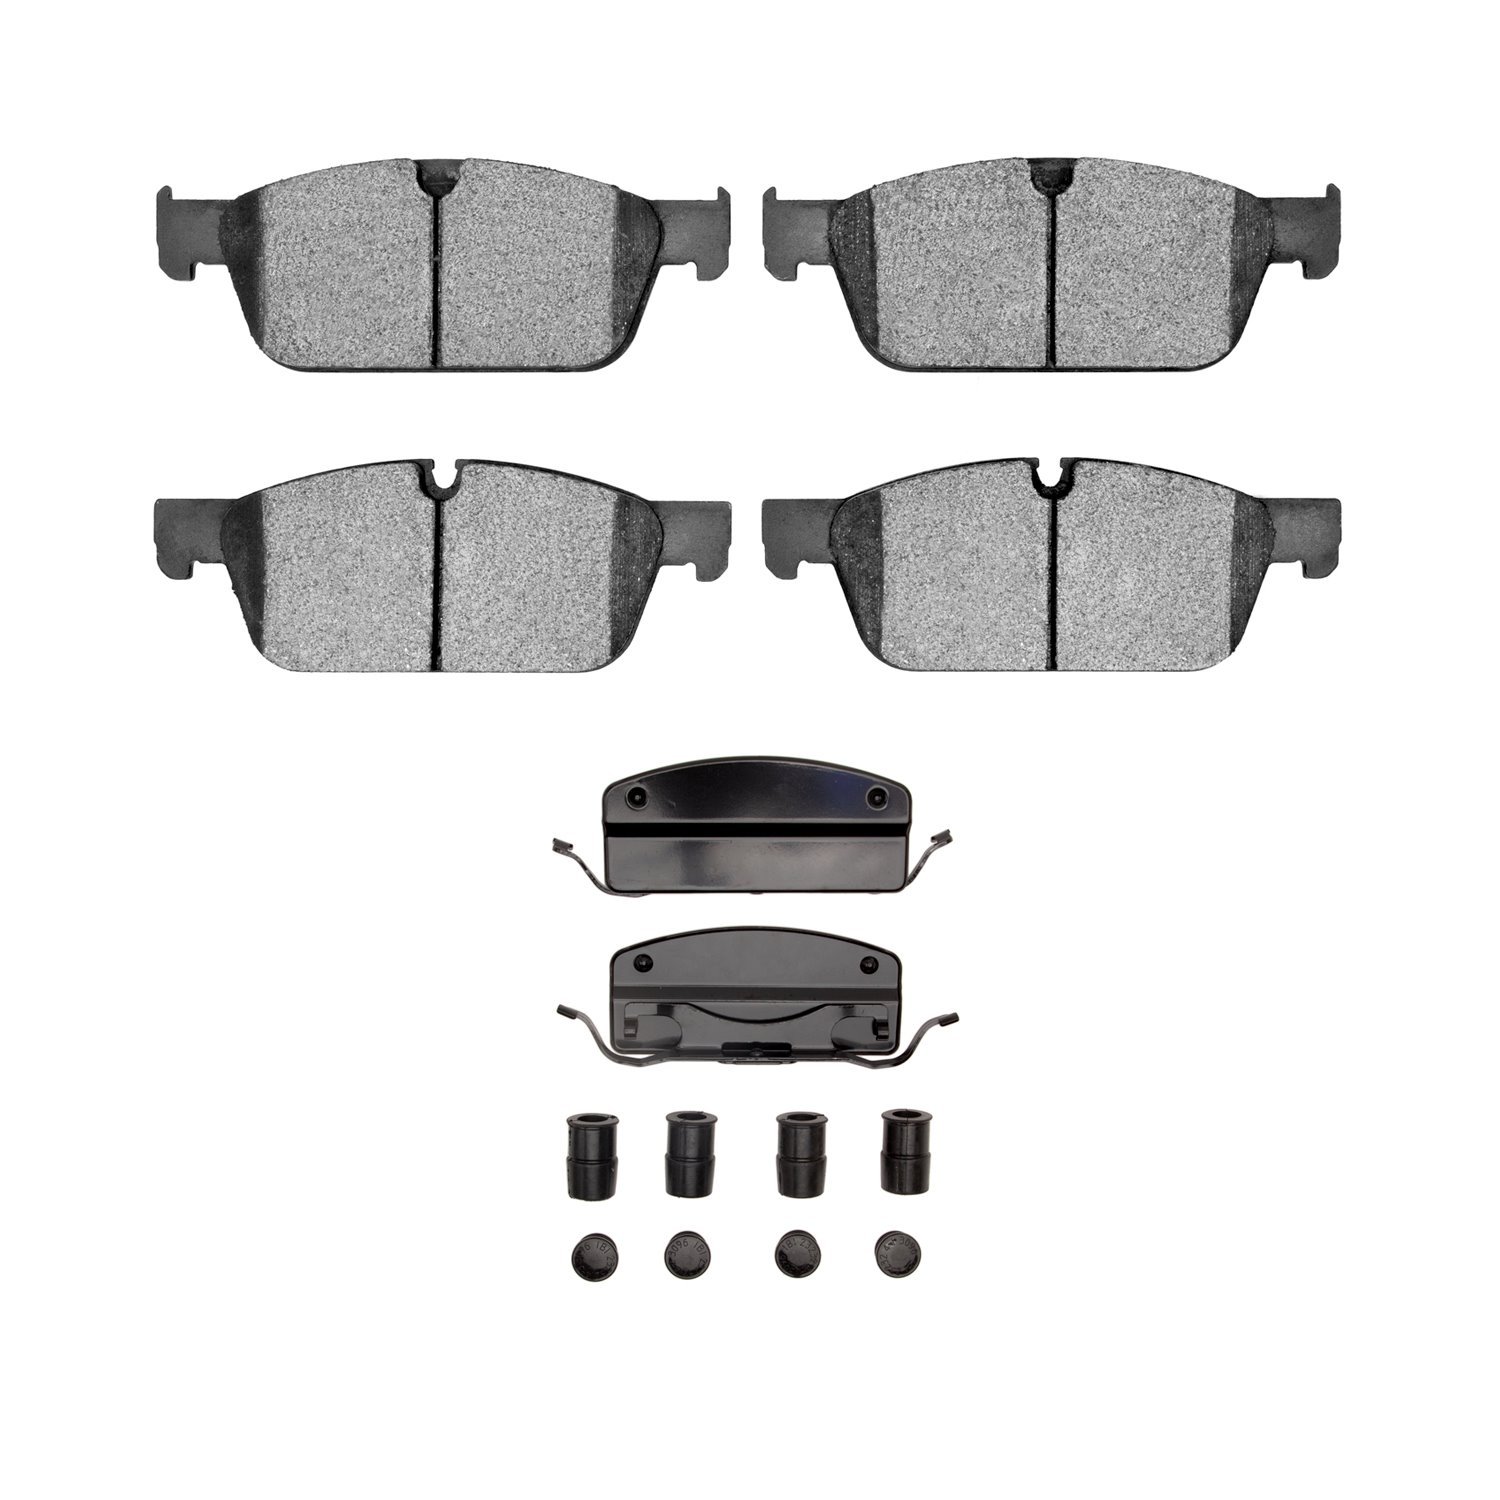 1311-1636-11 3000-Series Semi-Metallic Brake Pads & Hardware Kit, 2013-2019 Mercedes-Benz, Position: Front